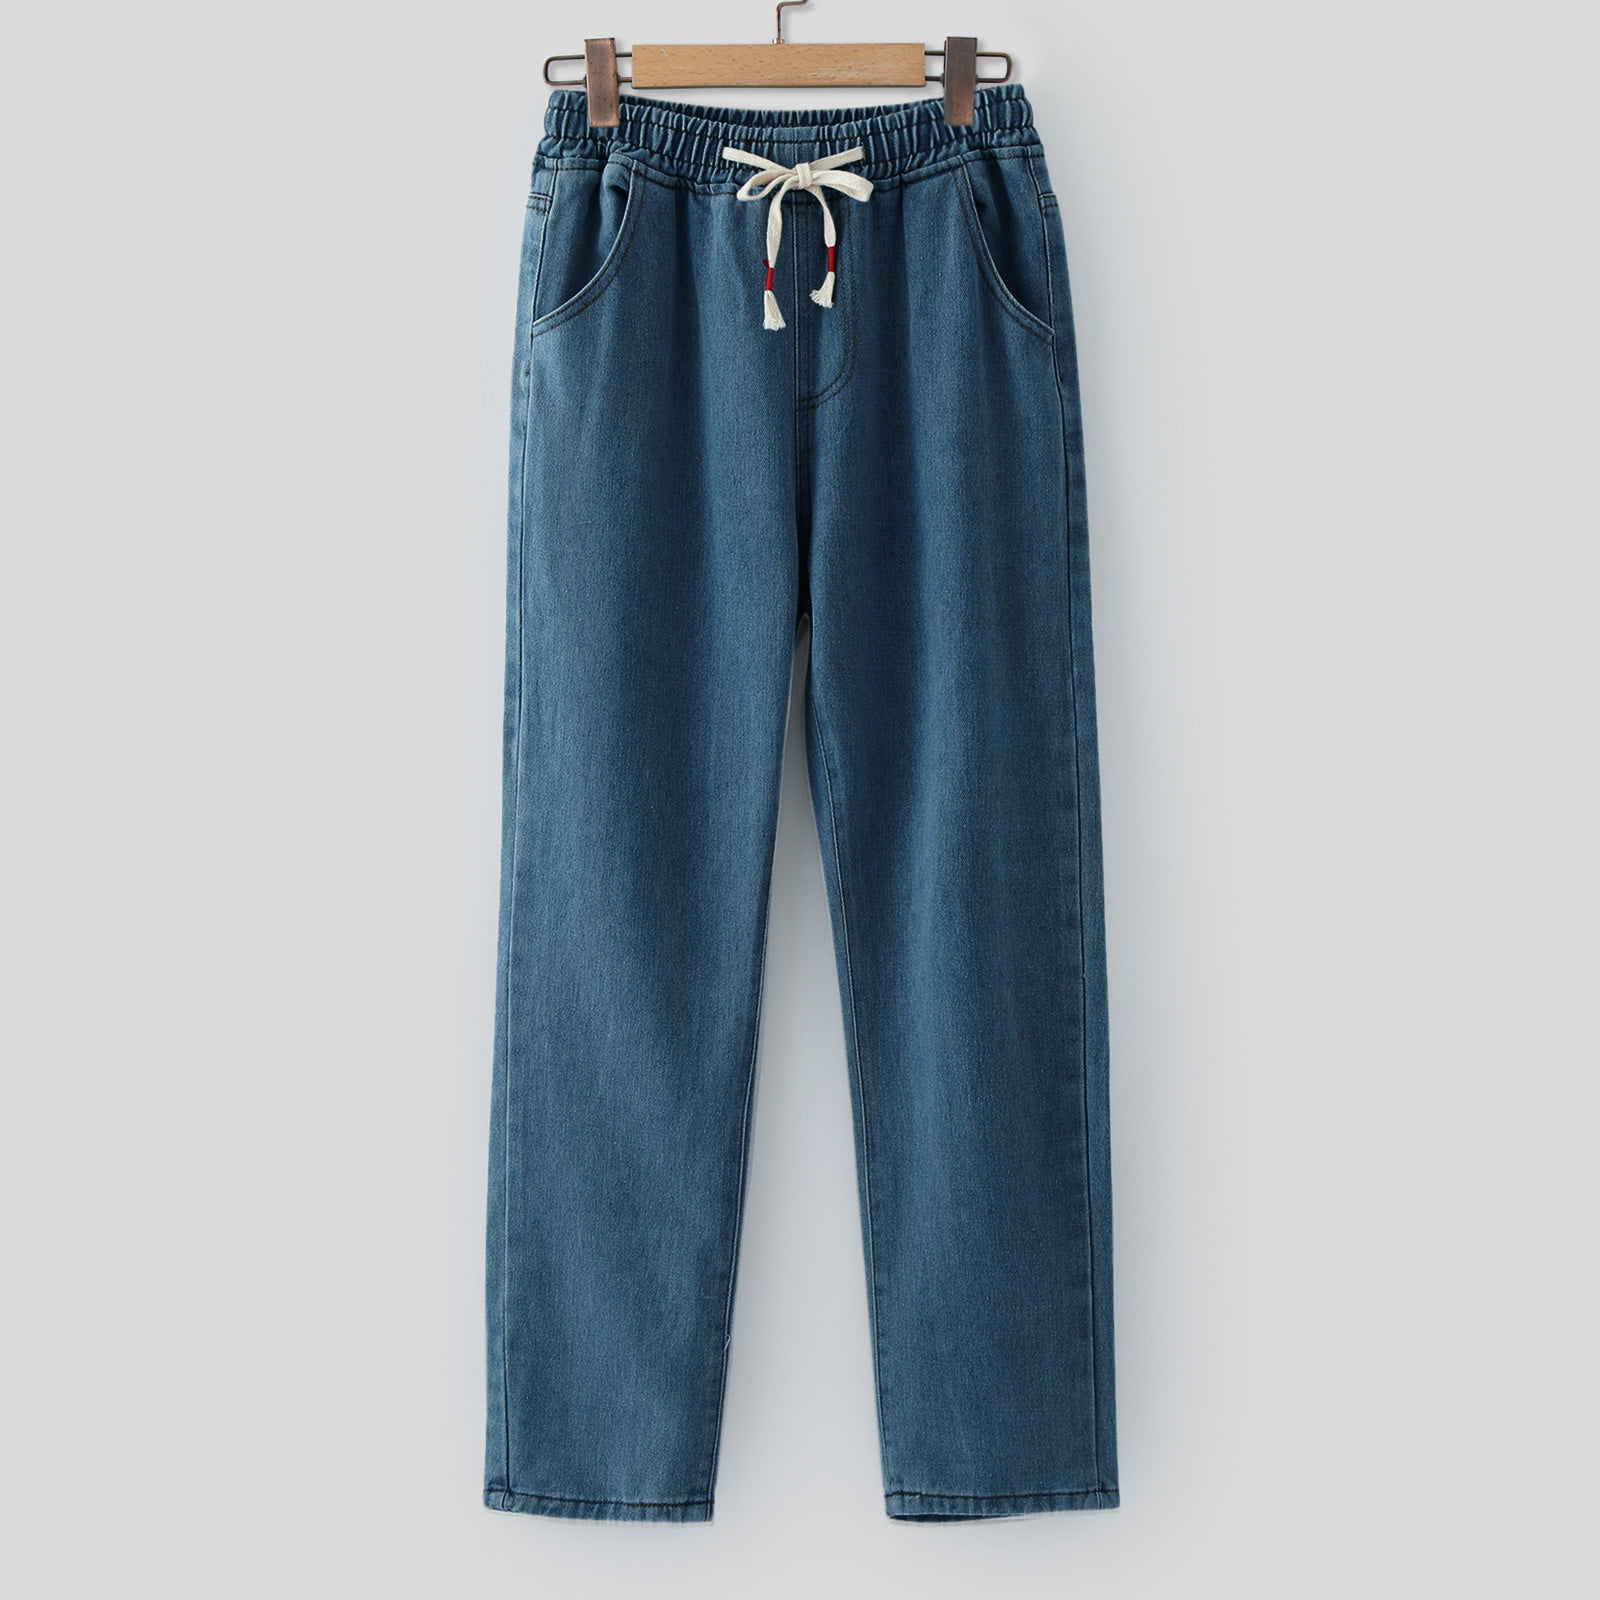 adviicd Men Pants Men Jeans Men's Relaxed Fit Classic Jeans - Loose Fashion  Baggy Comfort Plain Pants Blue 3X-Large